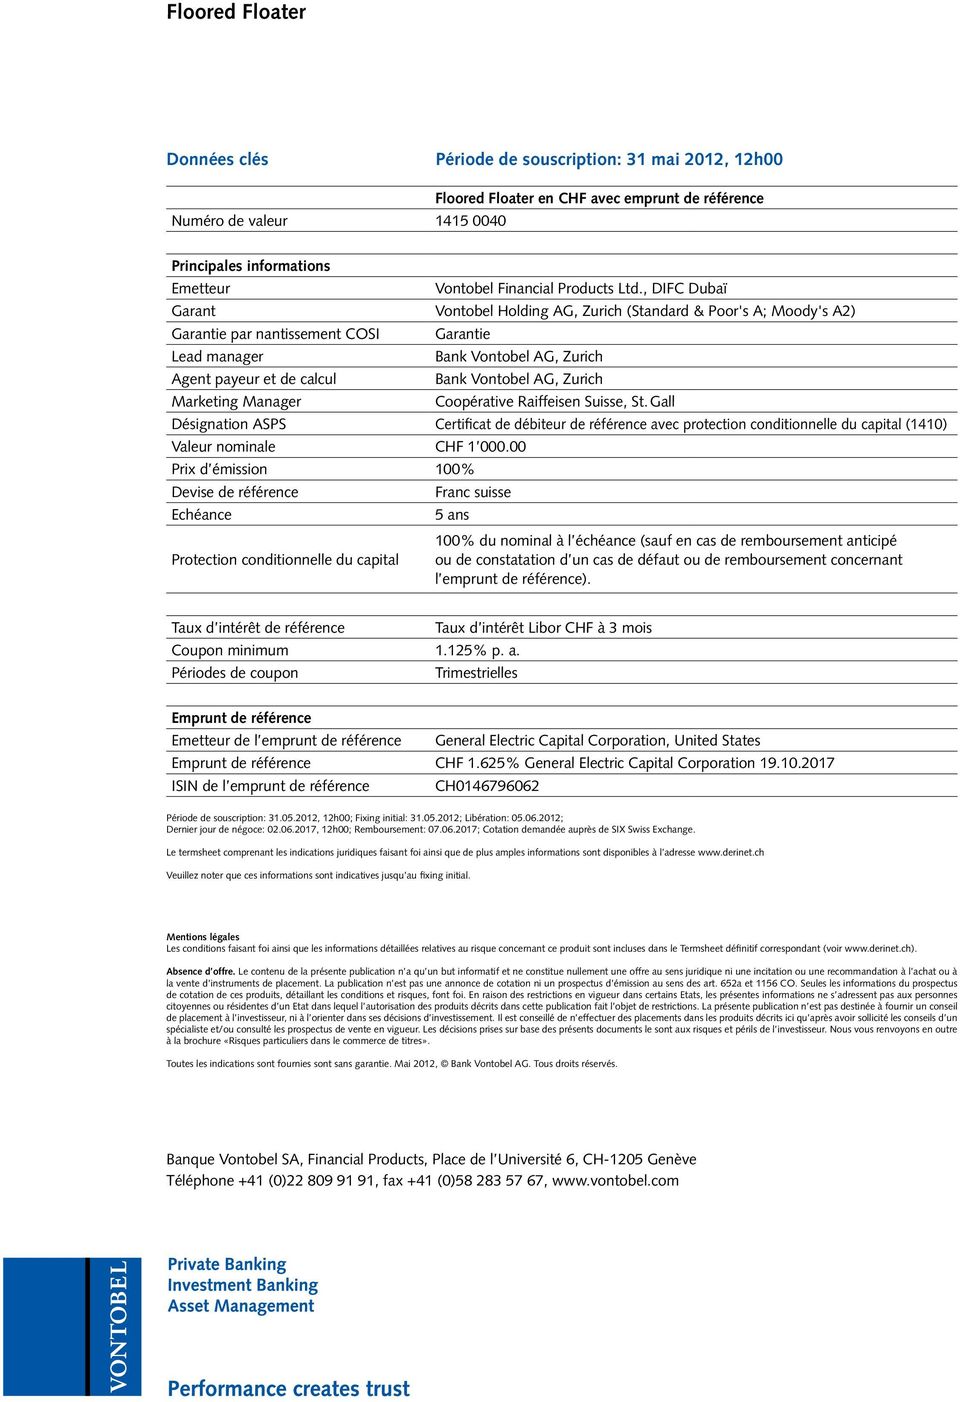 AG, Zurich Marketing Manager Coopérative Raiffeisen Suisse, St. Gall Désignation ASPS Certificat de débiteur de référence avec protection conditionnelle du capital (1410) Valeur nominale CHF 1 000.